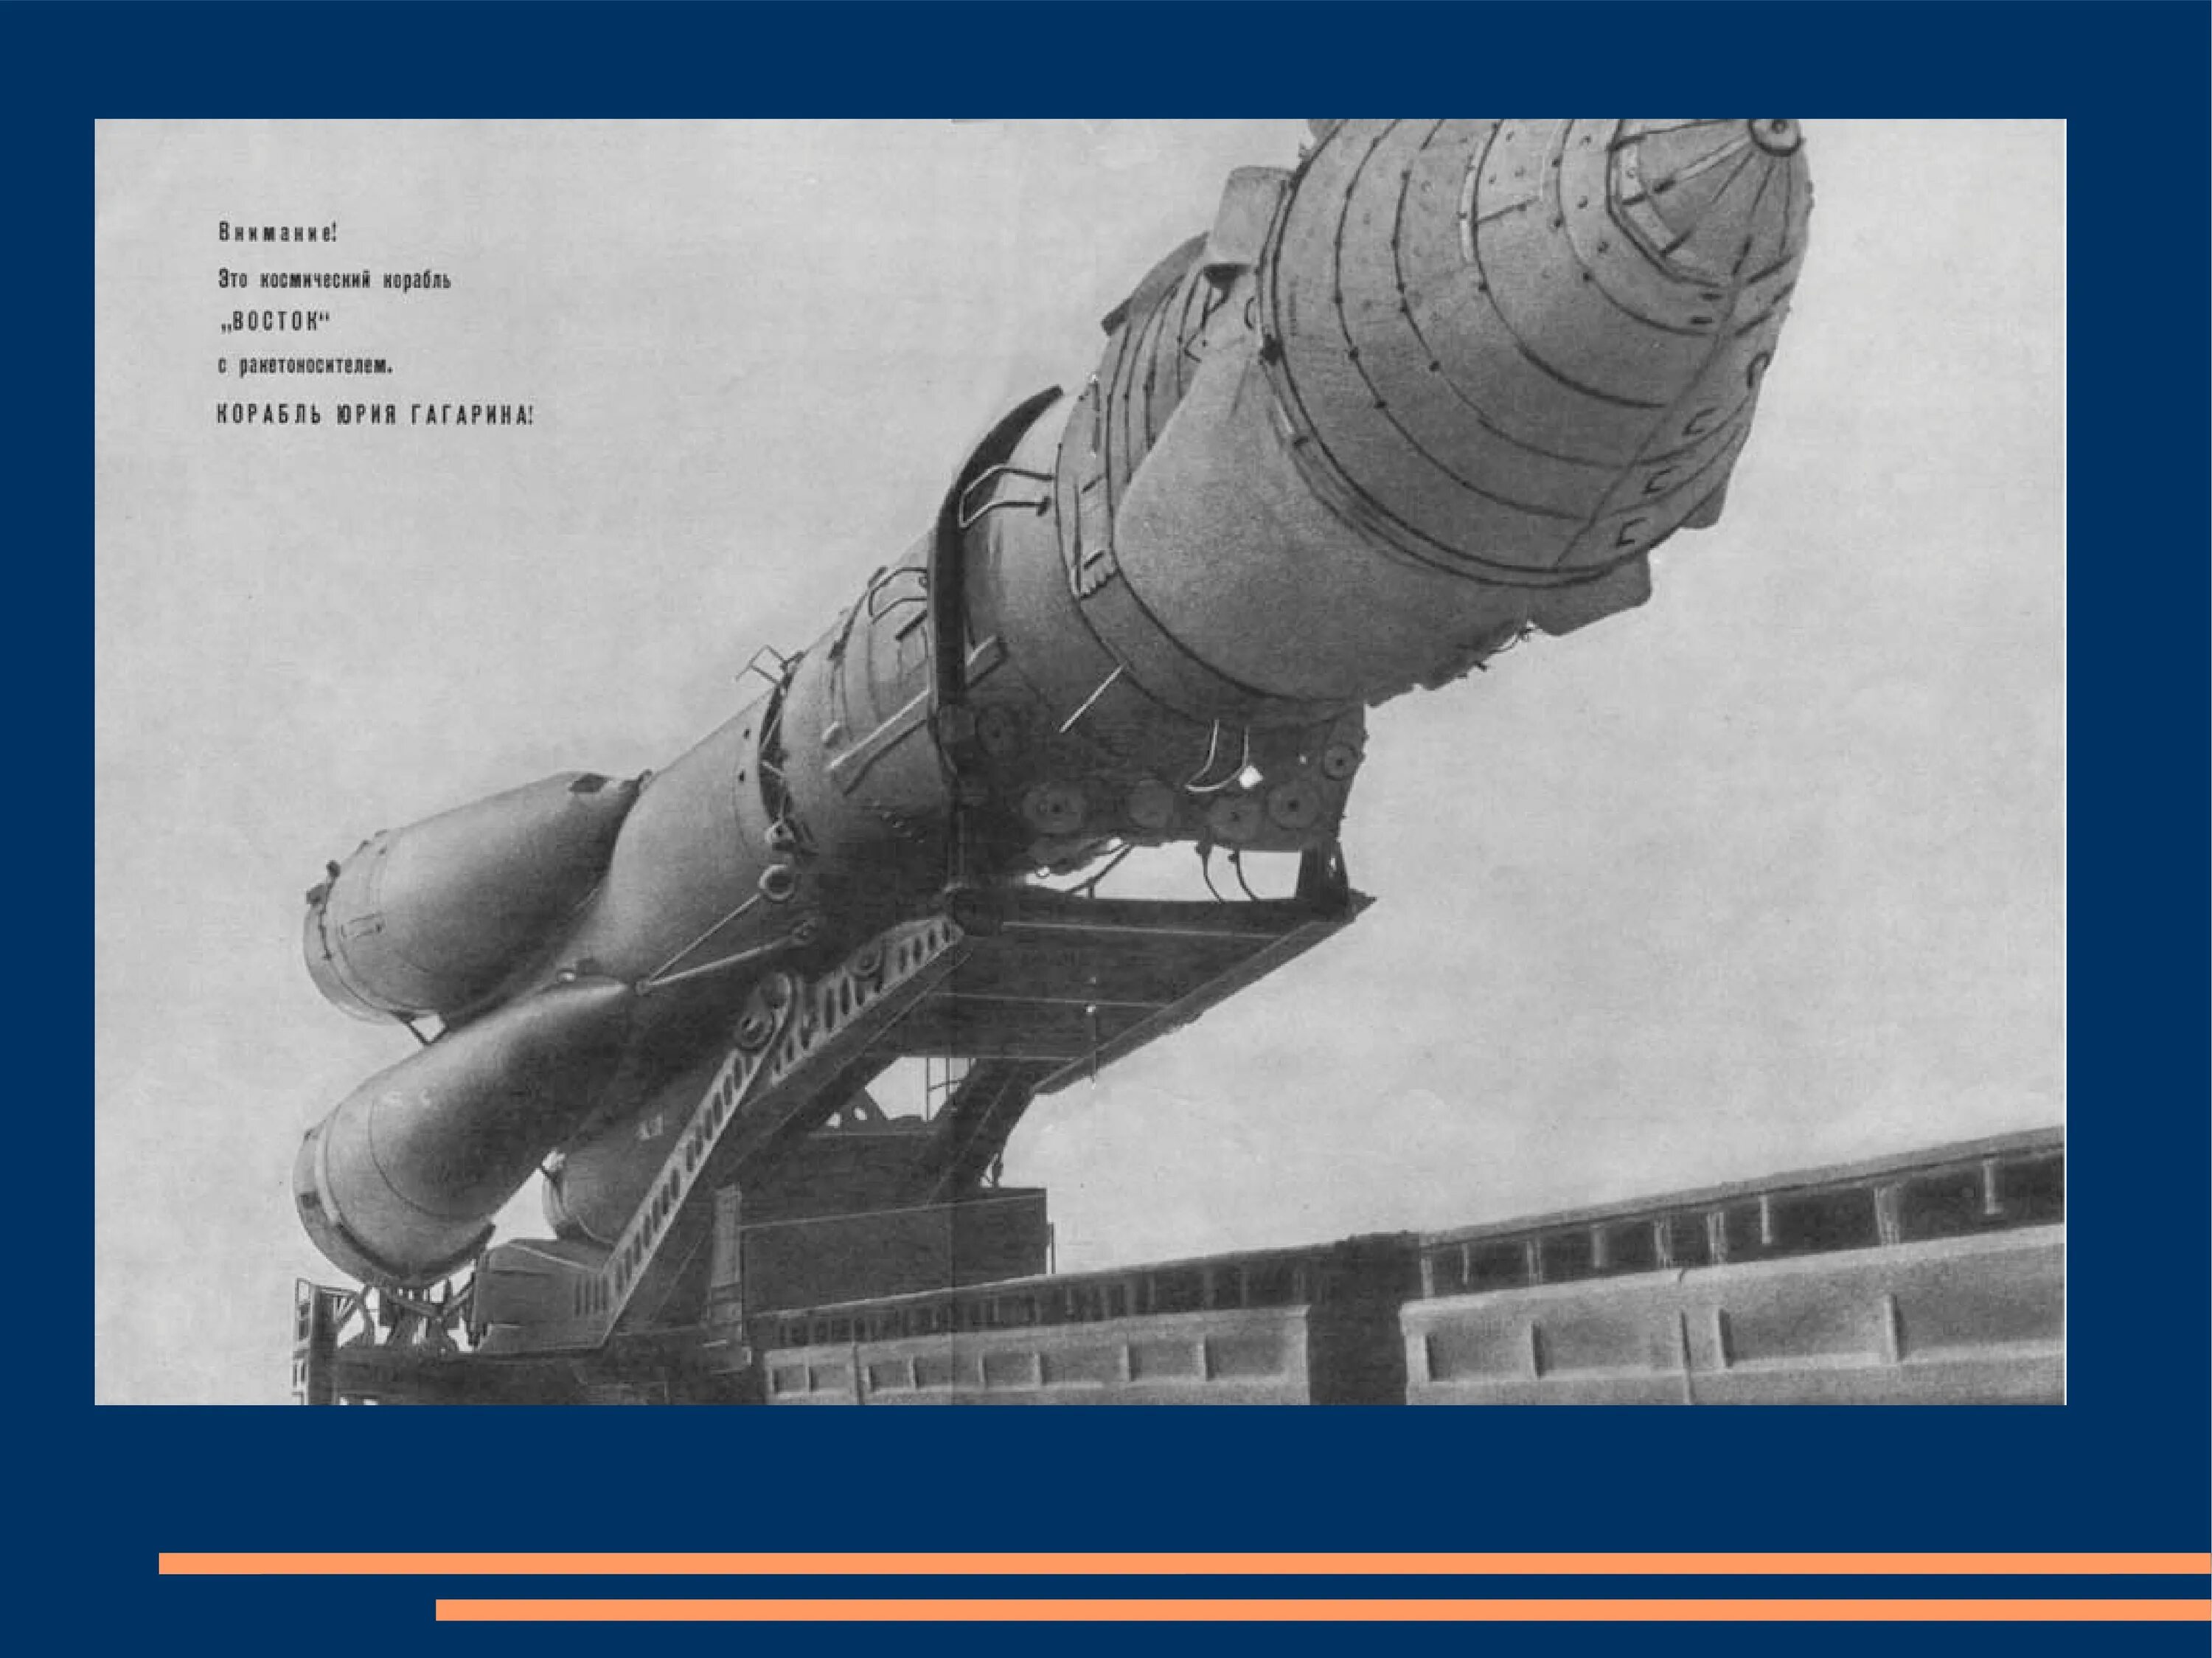 Космический корабль Восток Юрия Гагарина. Корабль Восток 1 Гагарин. Ракета Юрия Гагарина Восток-1. Космический корабль Восток Юрия Гагарина 1961. Первые space